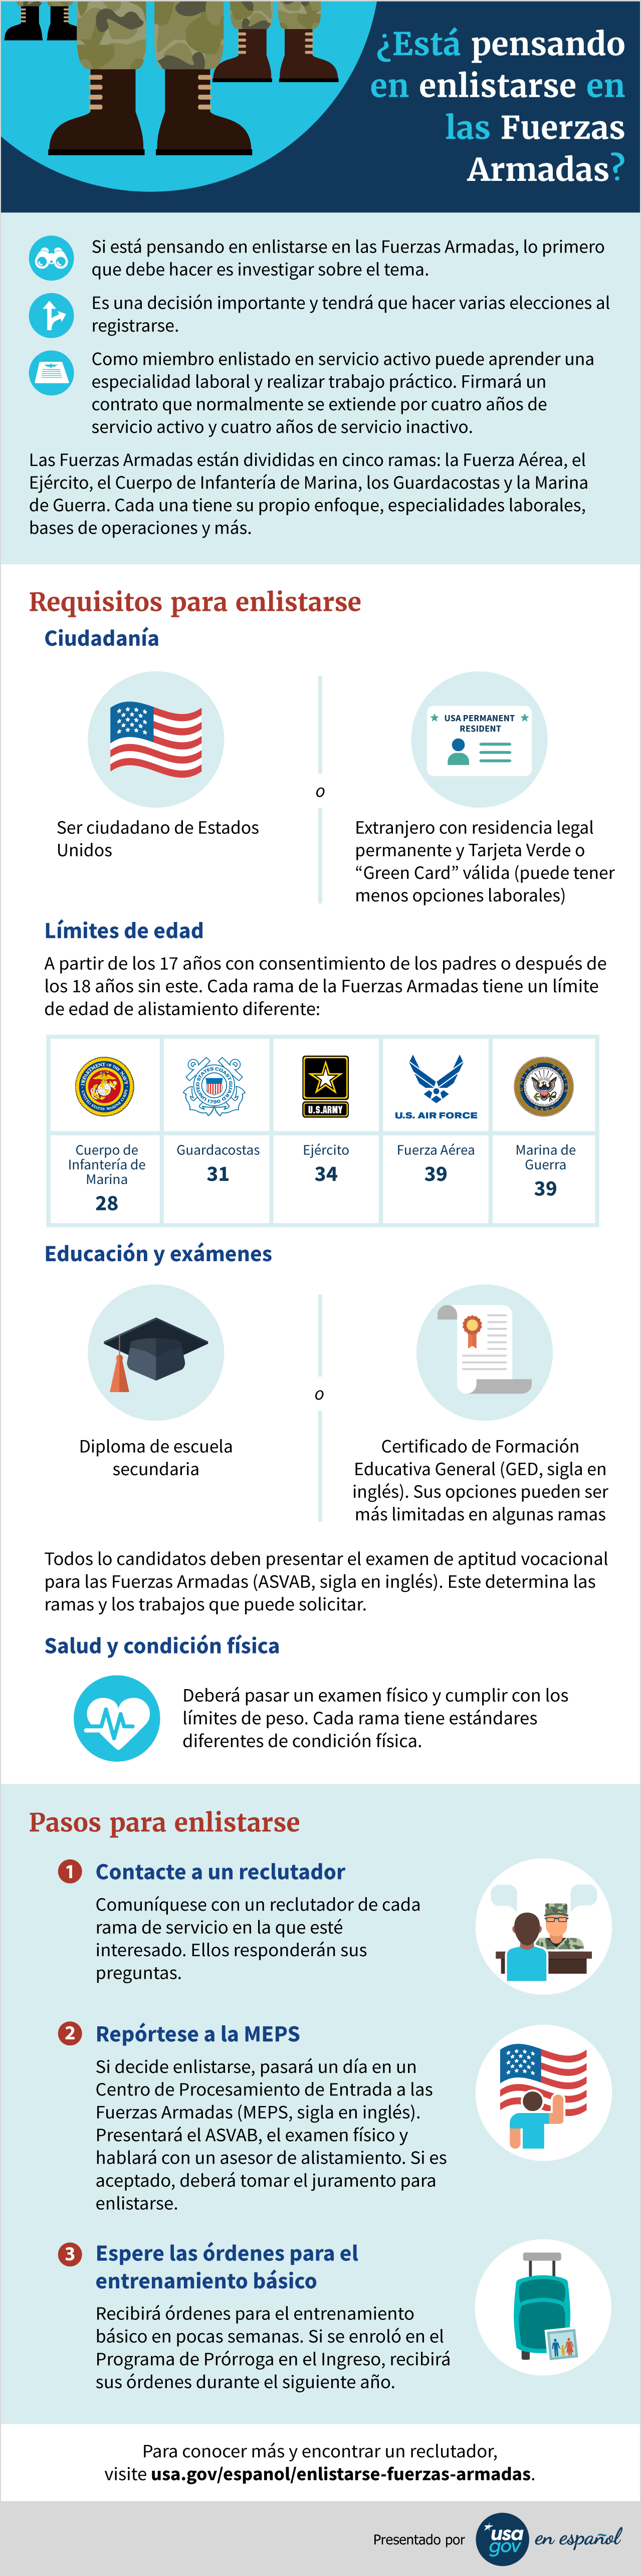 Infografía con los pasos y requisitos para enlistarse en las Fuerzas Armadas de EE. UU.